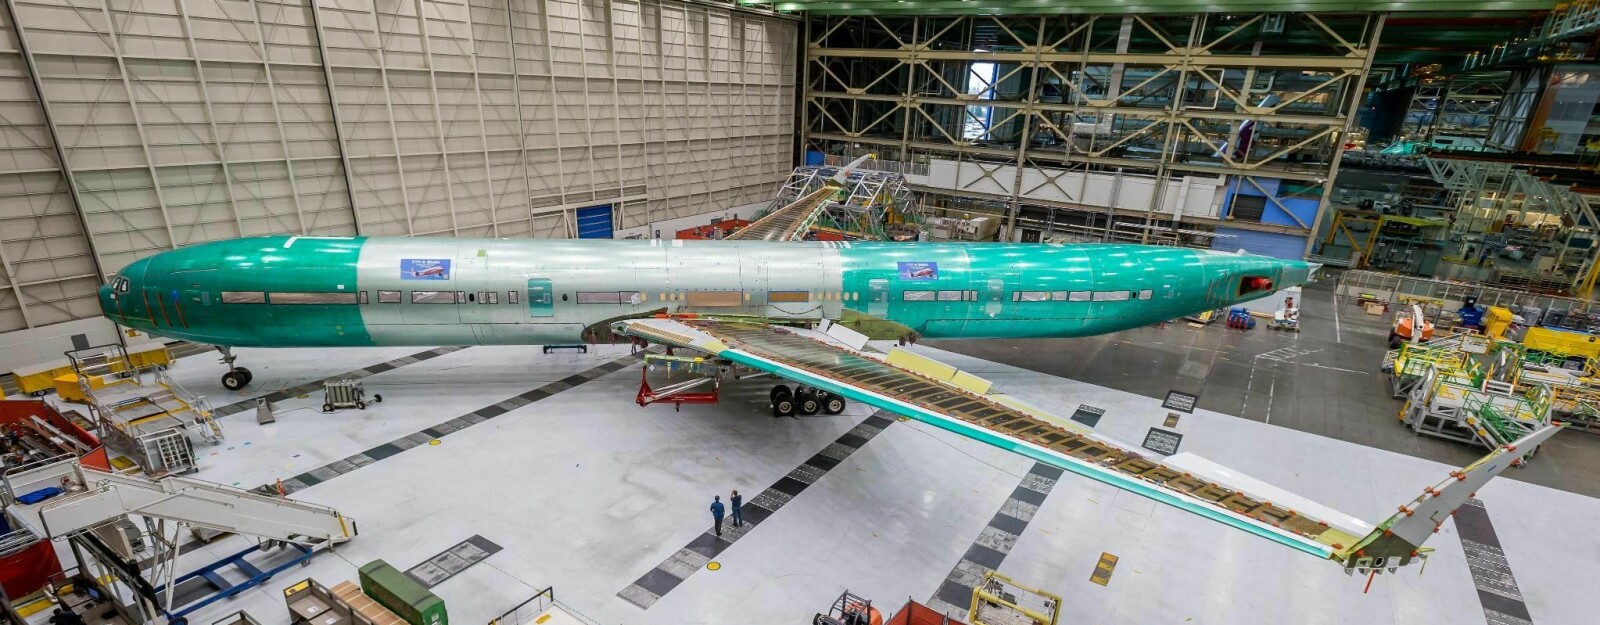 <b>PROTOTYPE:</b> Det første eksemplaret av 777 X er kommet ut av produksjons­linjen til Boeing-fabrikken. Vingespennet er så enormt at vingene har fått oppfellbare vingetipper for å passe inn på flyparkerings­-<br/>plassene. 